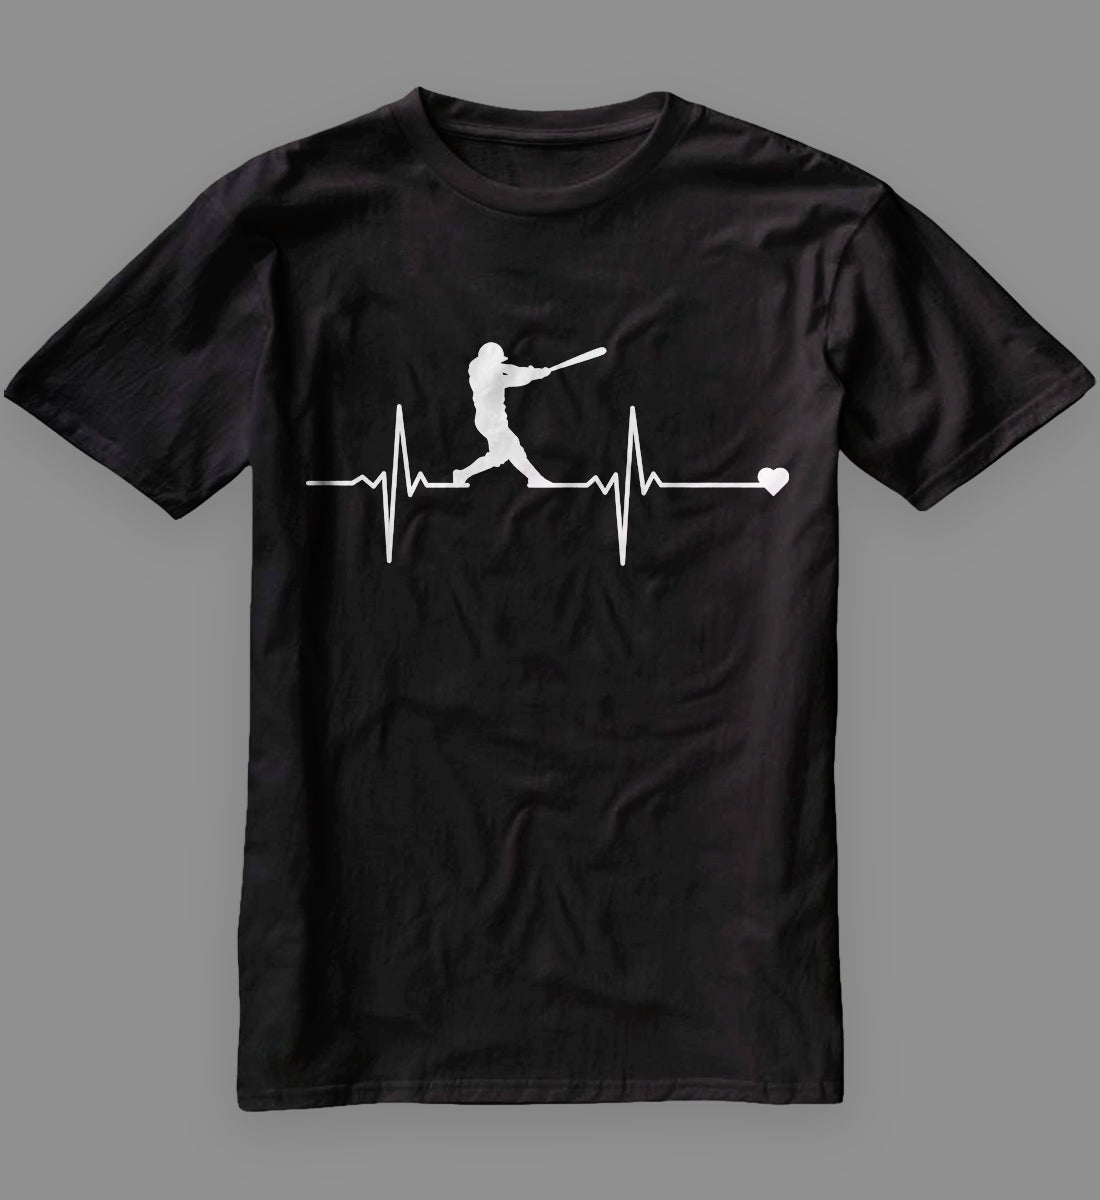 Baseball Heartbeat Pulse T-Shirt